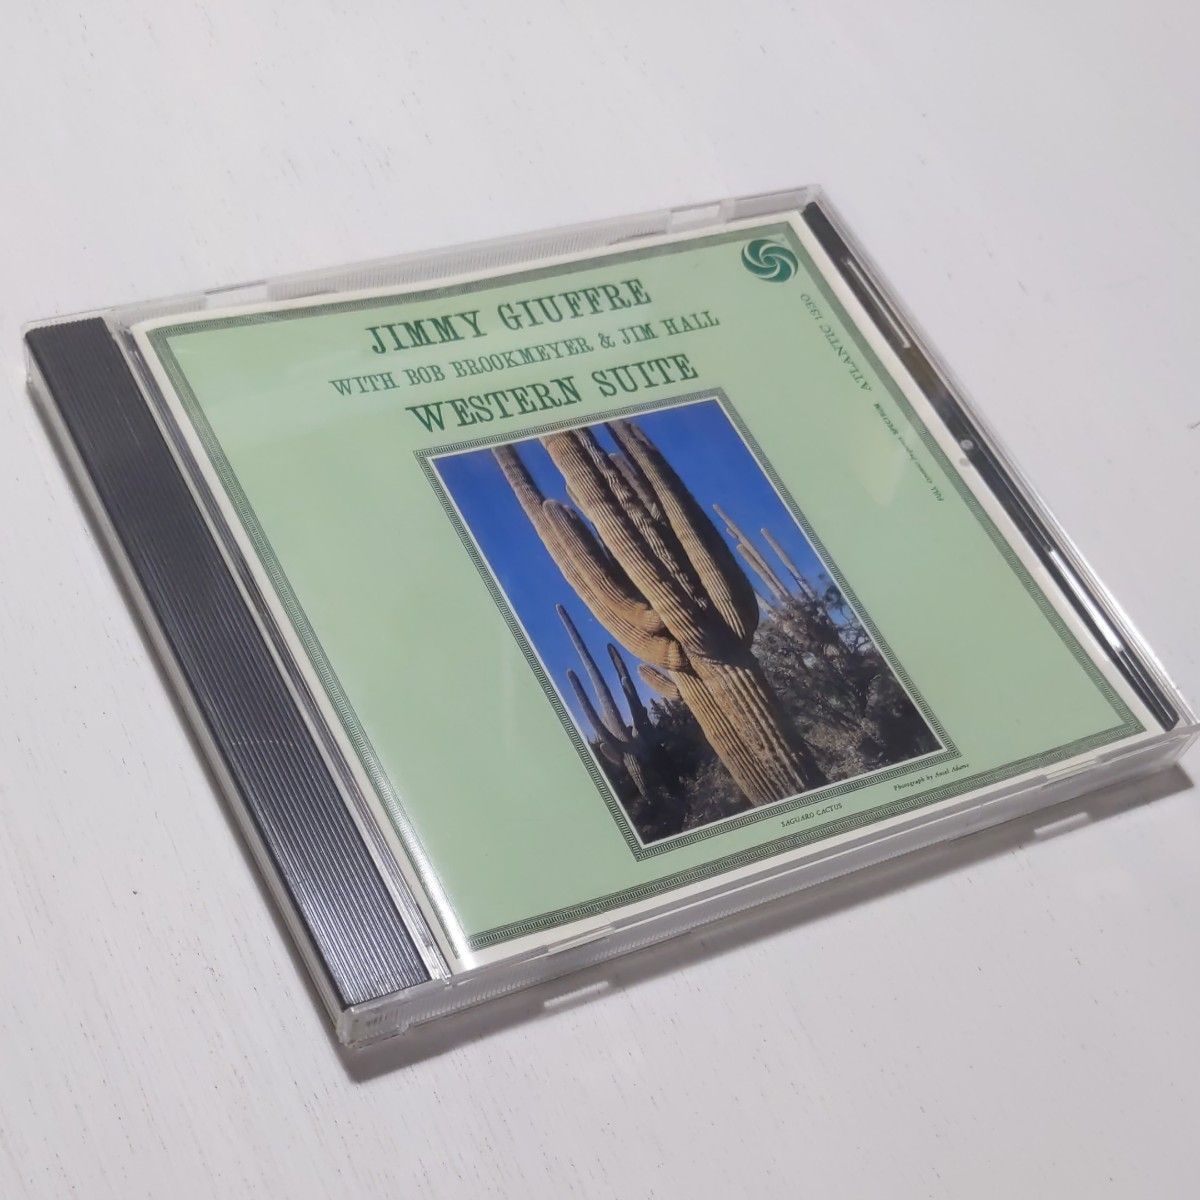 ウェスタン組曲／ジミージュフリー  WESTERN SUITE/JIMMY GIUFFRE 帯付き国内盤CD